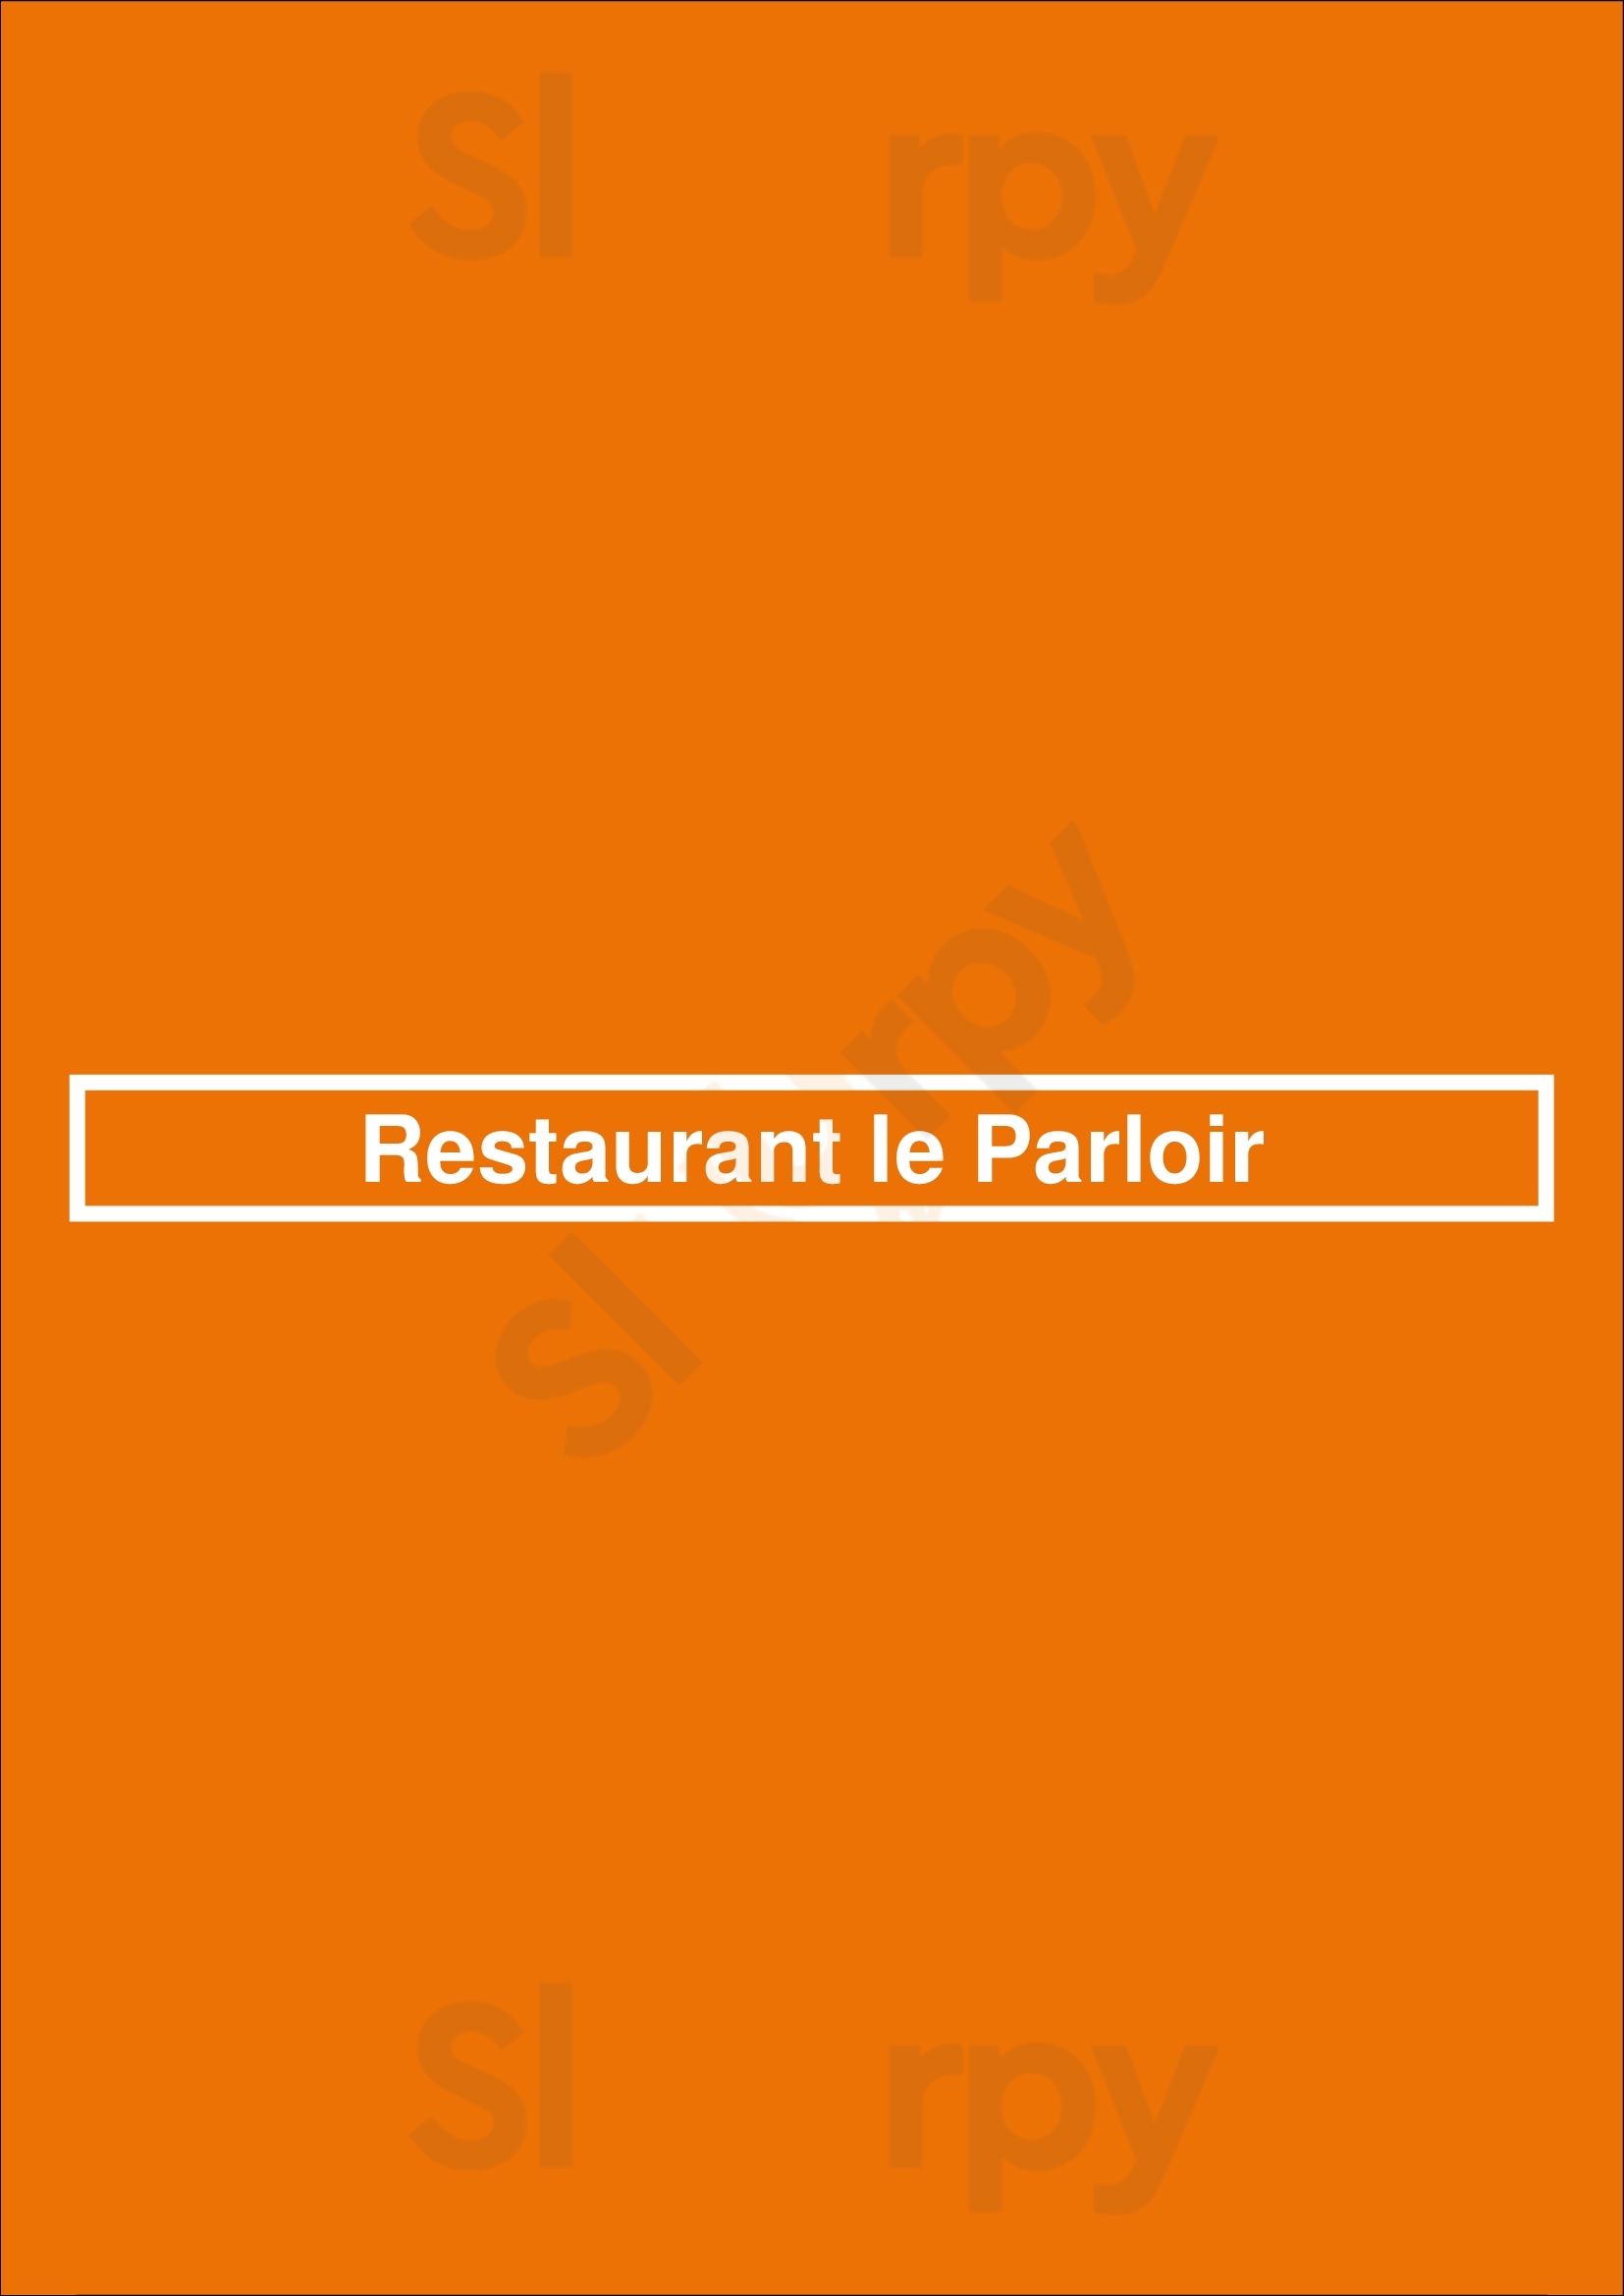 Restaurant Le Parloir Lyon Menu - 1